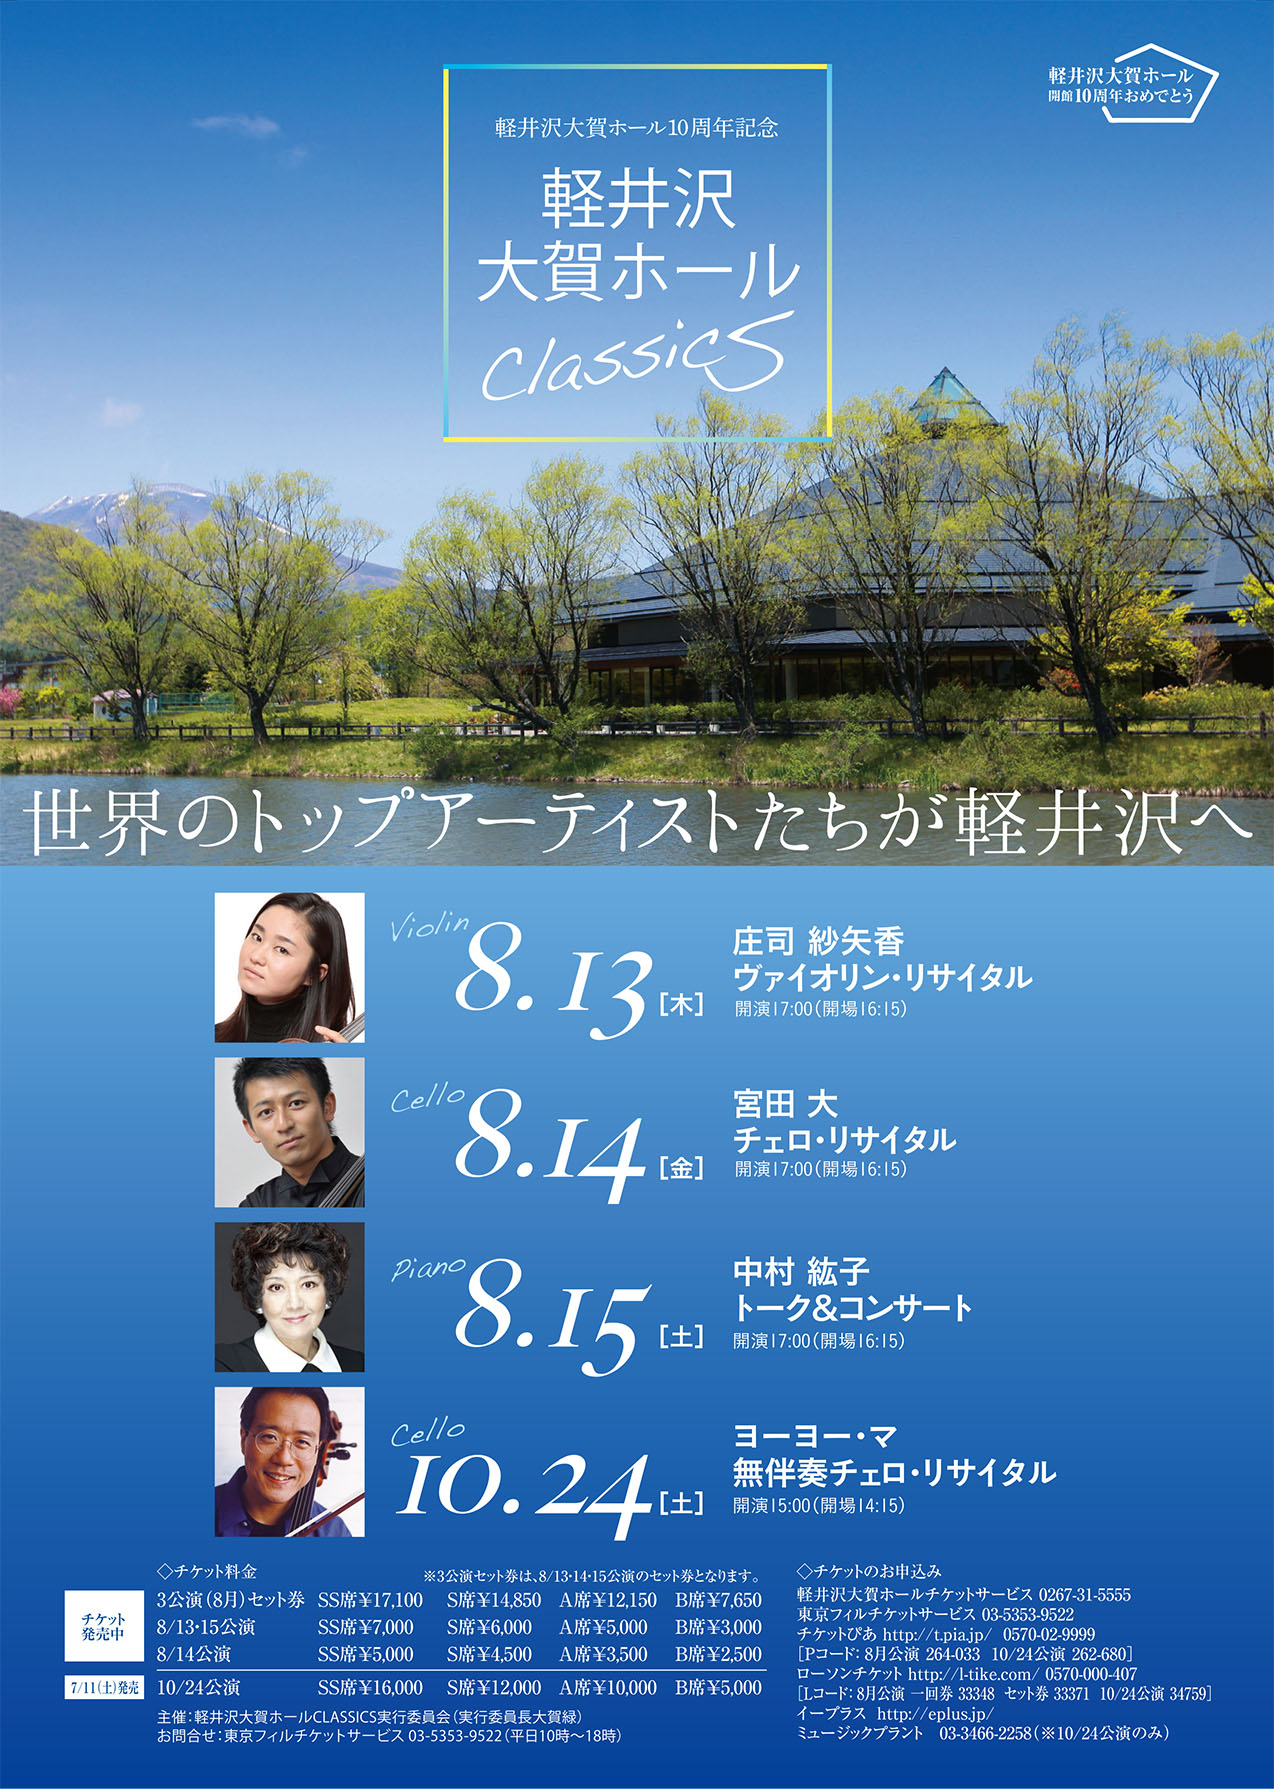 ～Karuizawa Ohga Hall Classics～ Sayaka Shoji Violin Recital